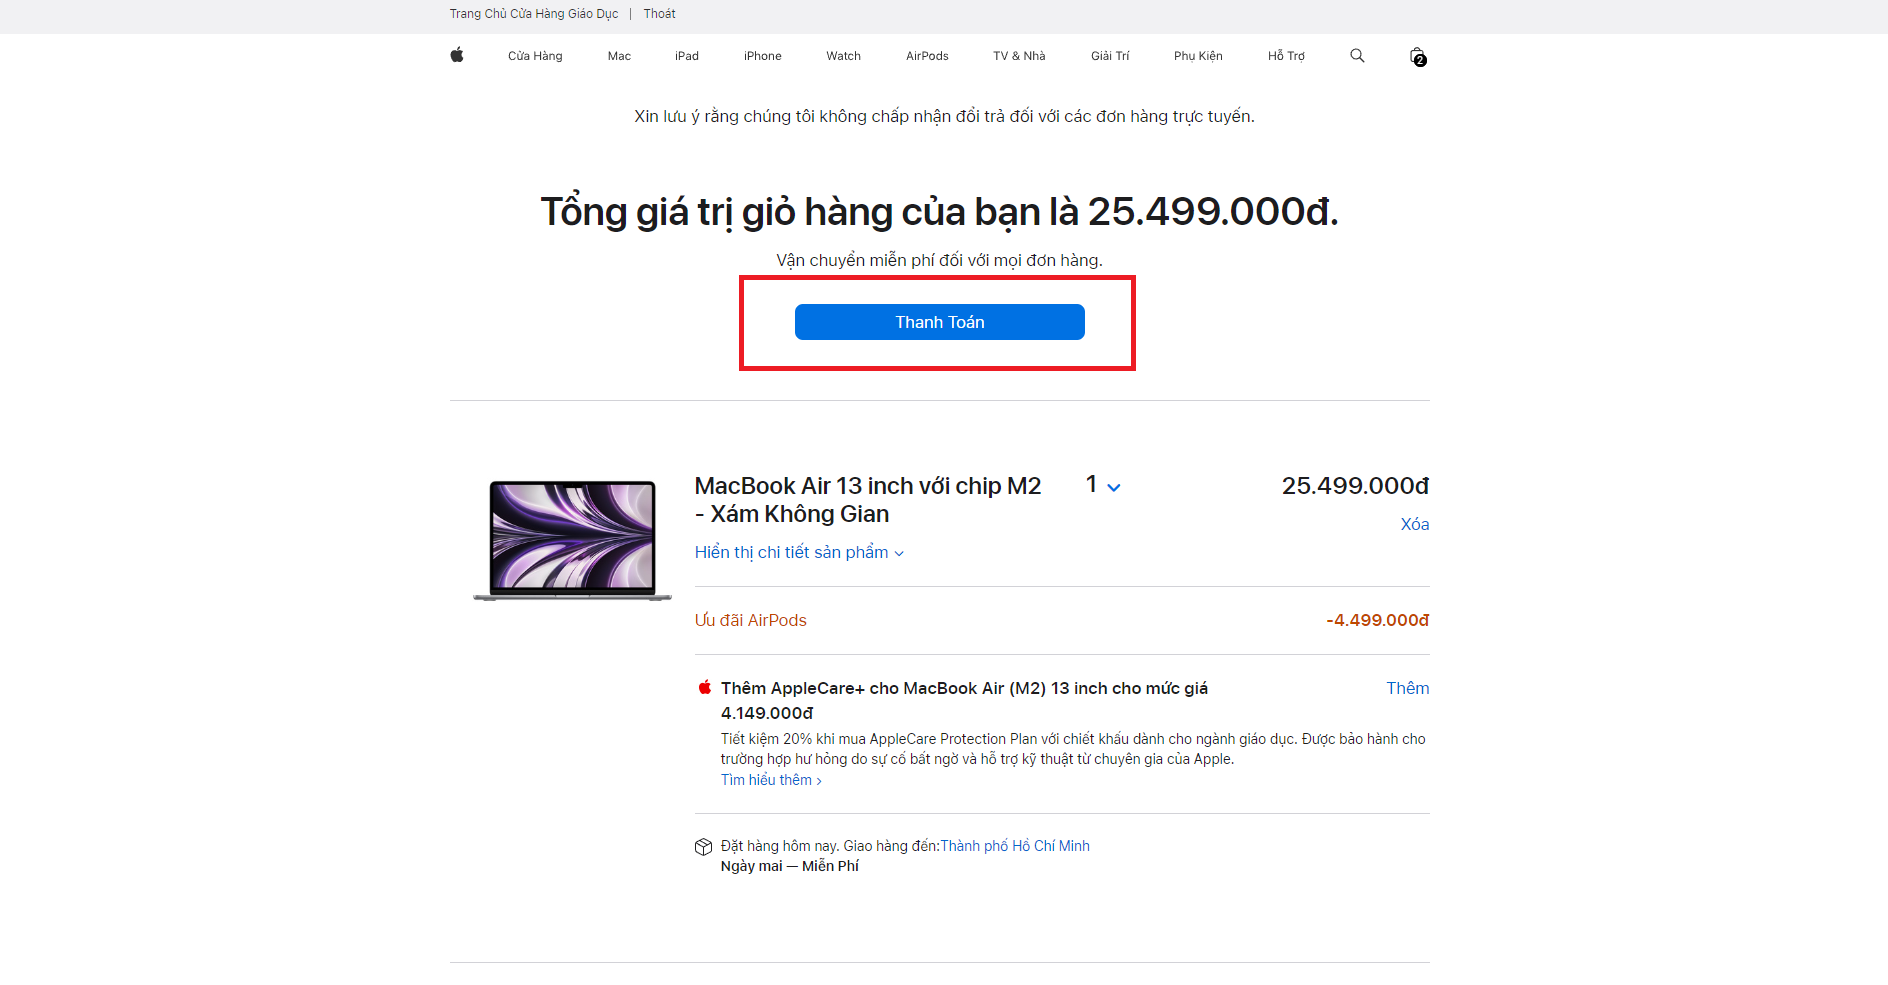 Hướng dẫn mua sản phẩm tại Apple Store Việt Nam với giá ưu đãi theo chương trình hỗ trợ giáo dục của Apple - Ảnh 9.